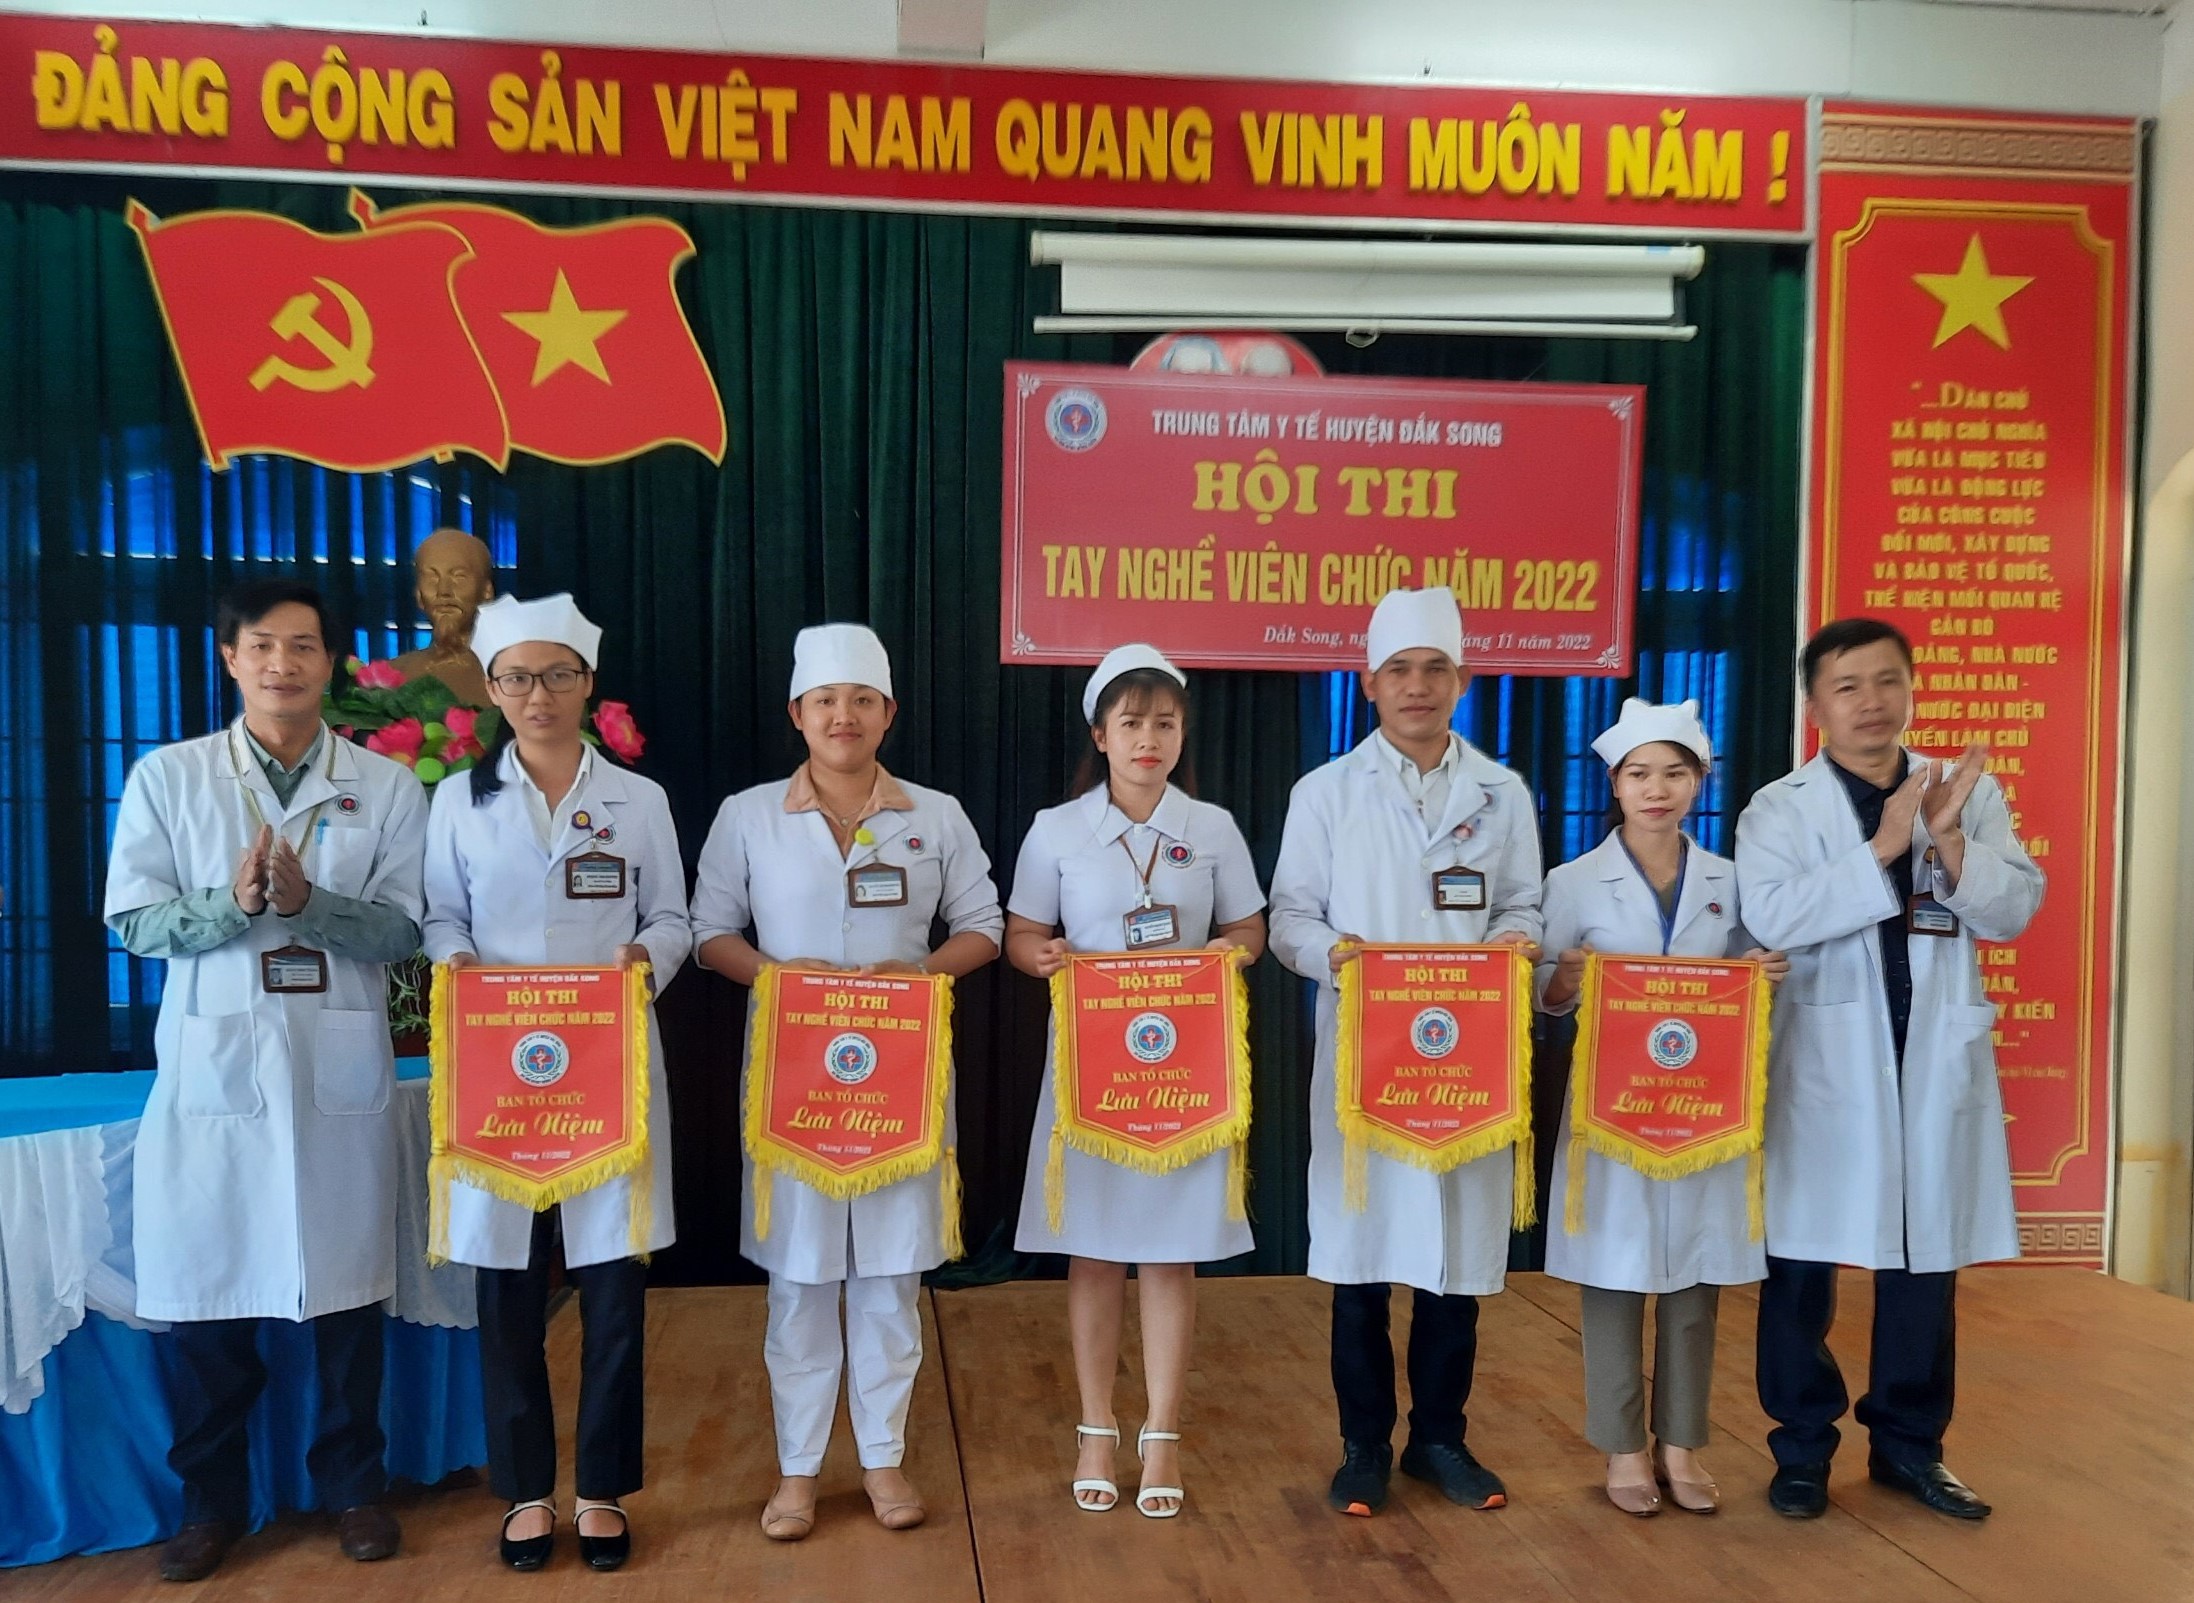 Hình ảnh: TTYT huyện Đắk Song: Tổ chức Hội thi tay nghề việc chức năm 2022 số 1